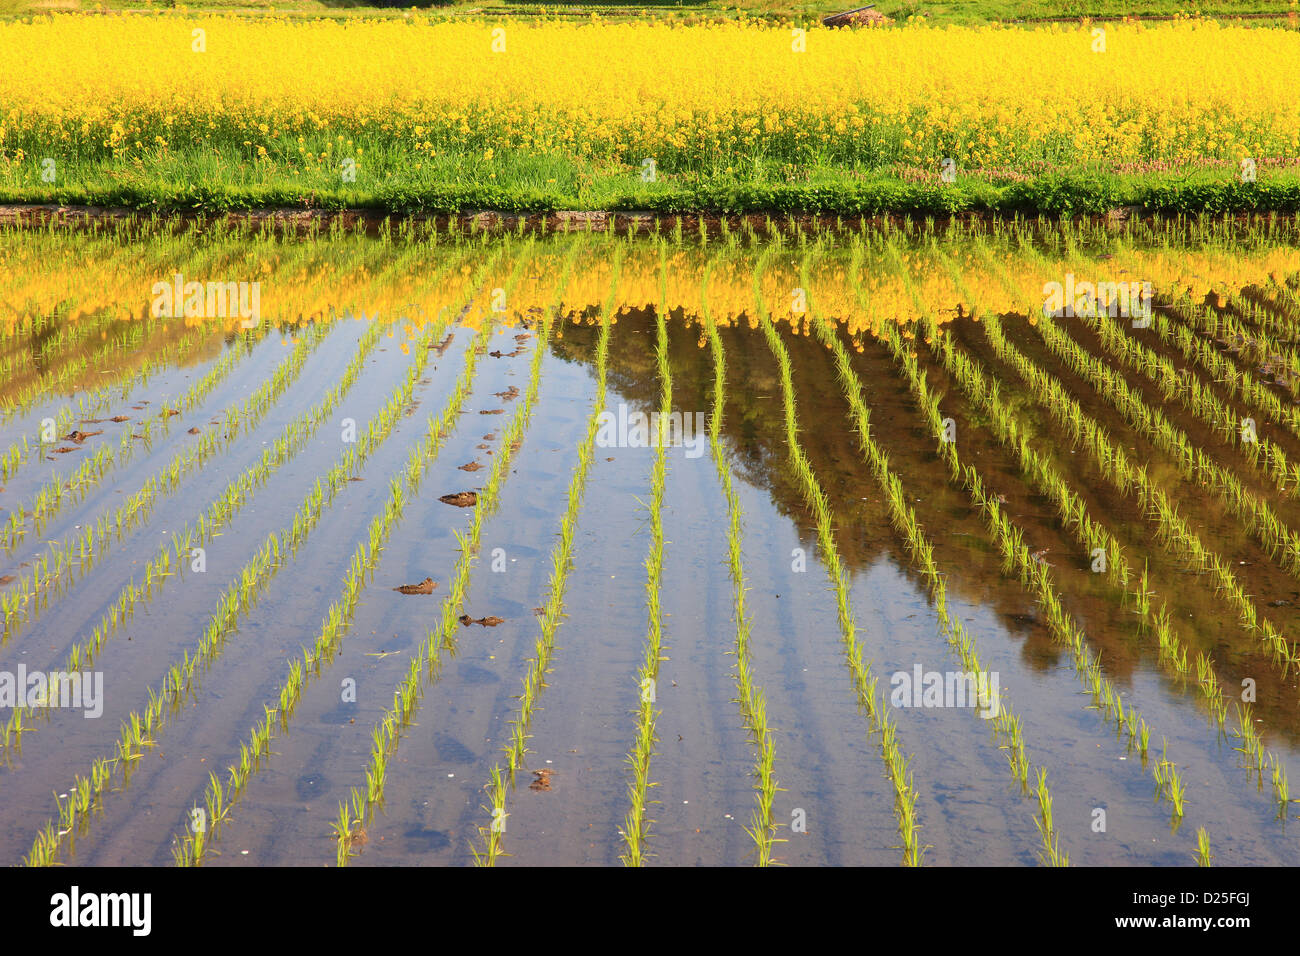 Rice field in Omachi, Nagano Prefecture Stock Photo